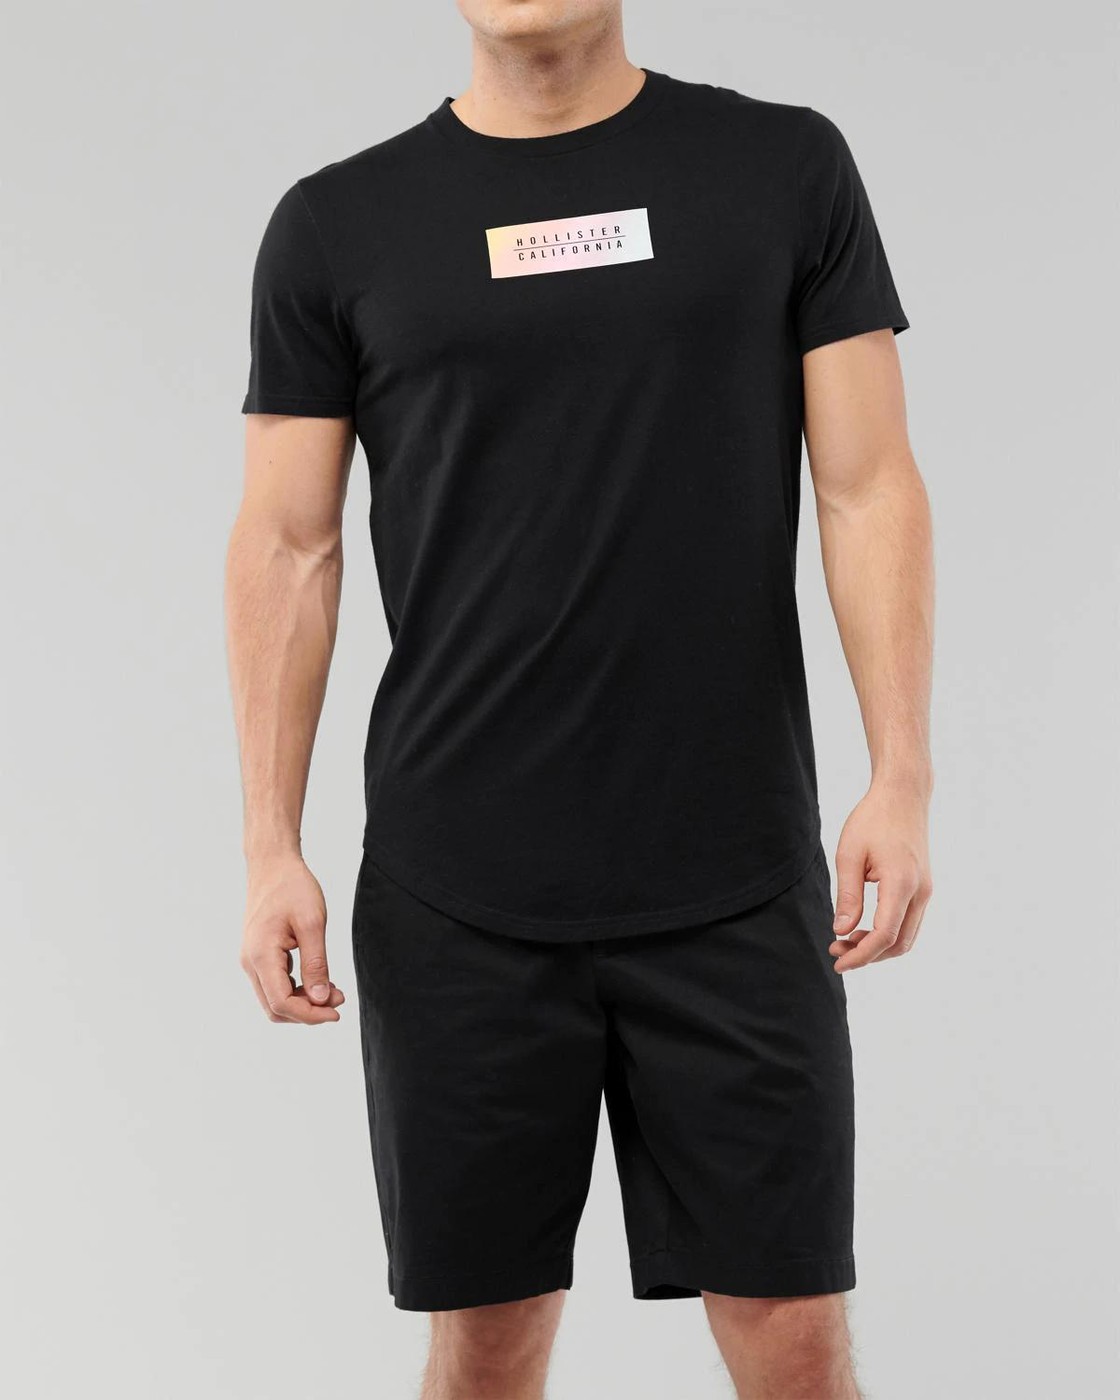 Черная футболка - мужская футболка Hollister, L, L